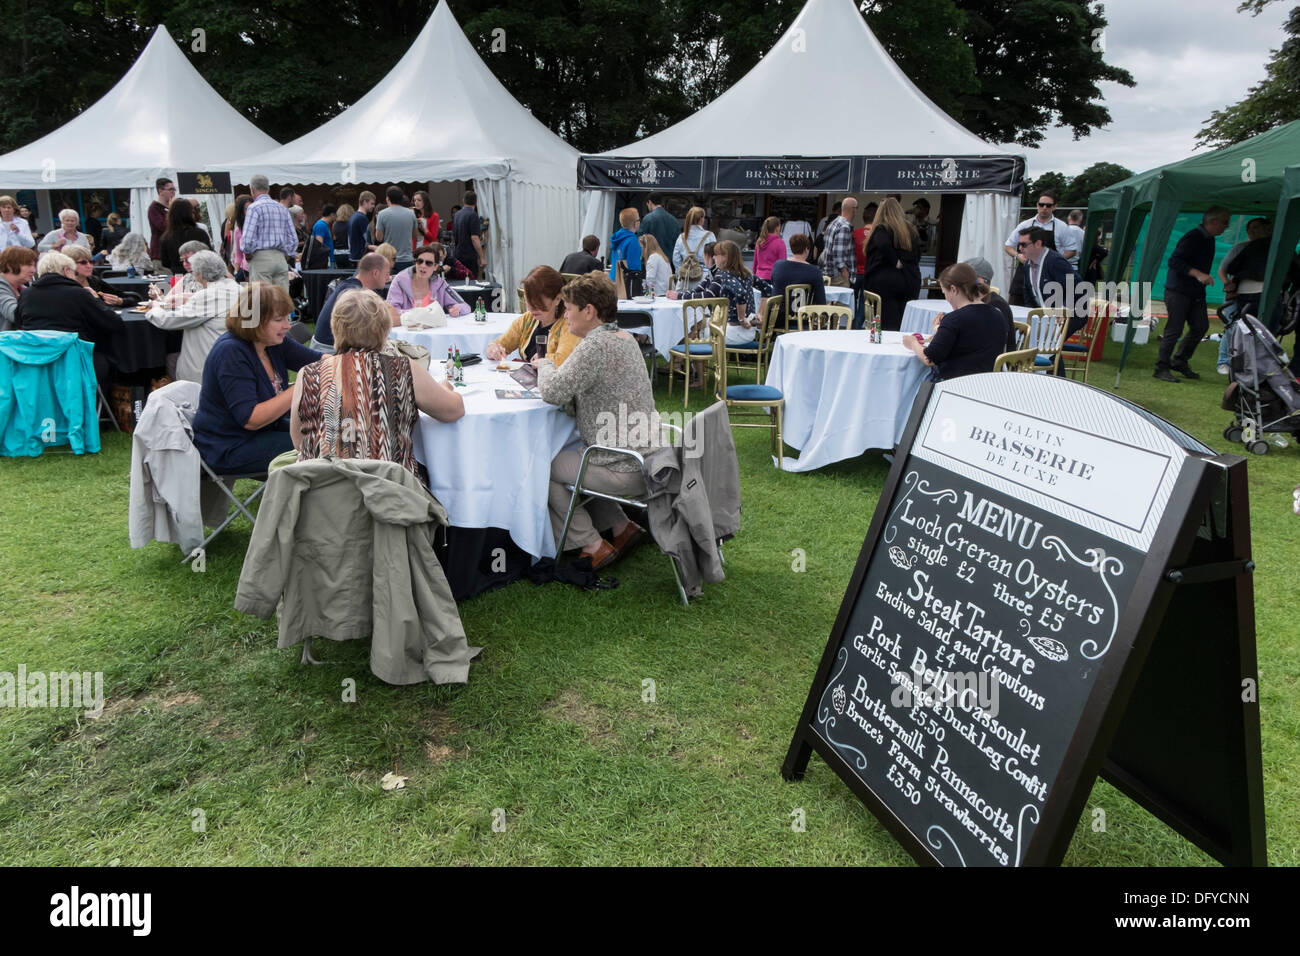 Festival des gourmands, Inverleith Park, Édimbourg, Écosse, événement annuel, août 2013. Galvin, Brasserie, bar à huitres. Banque D'Images